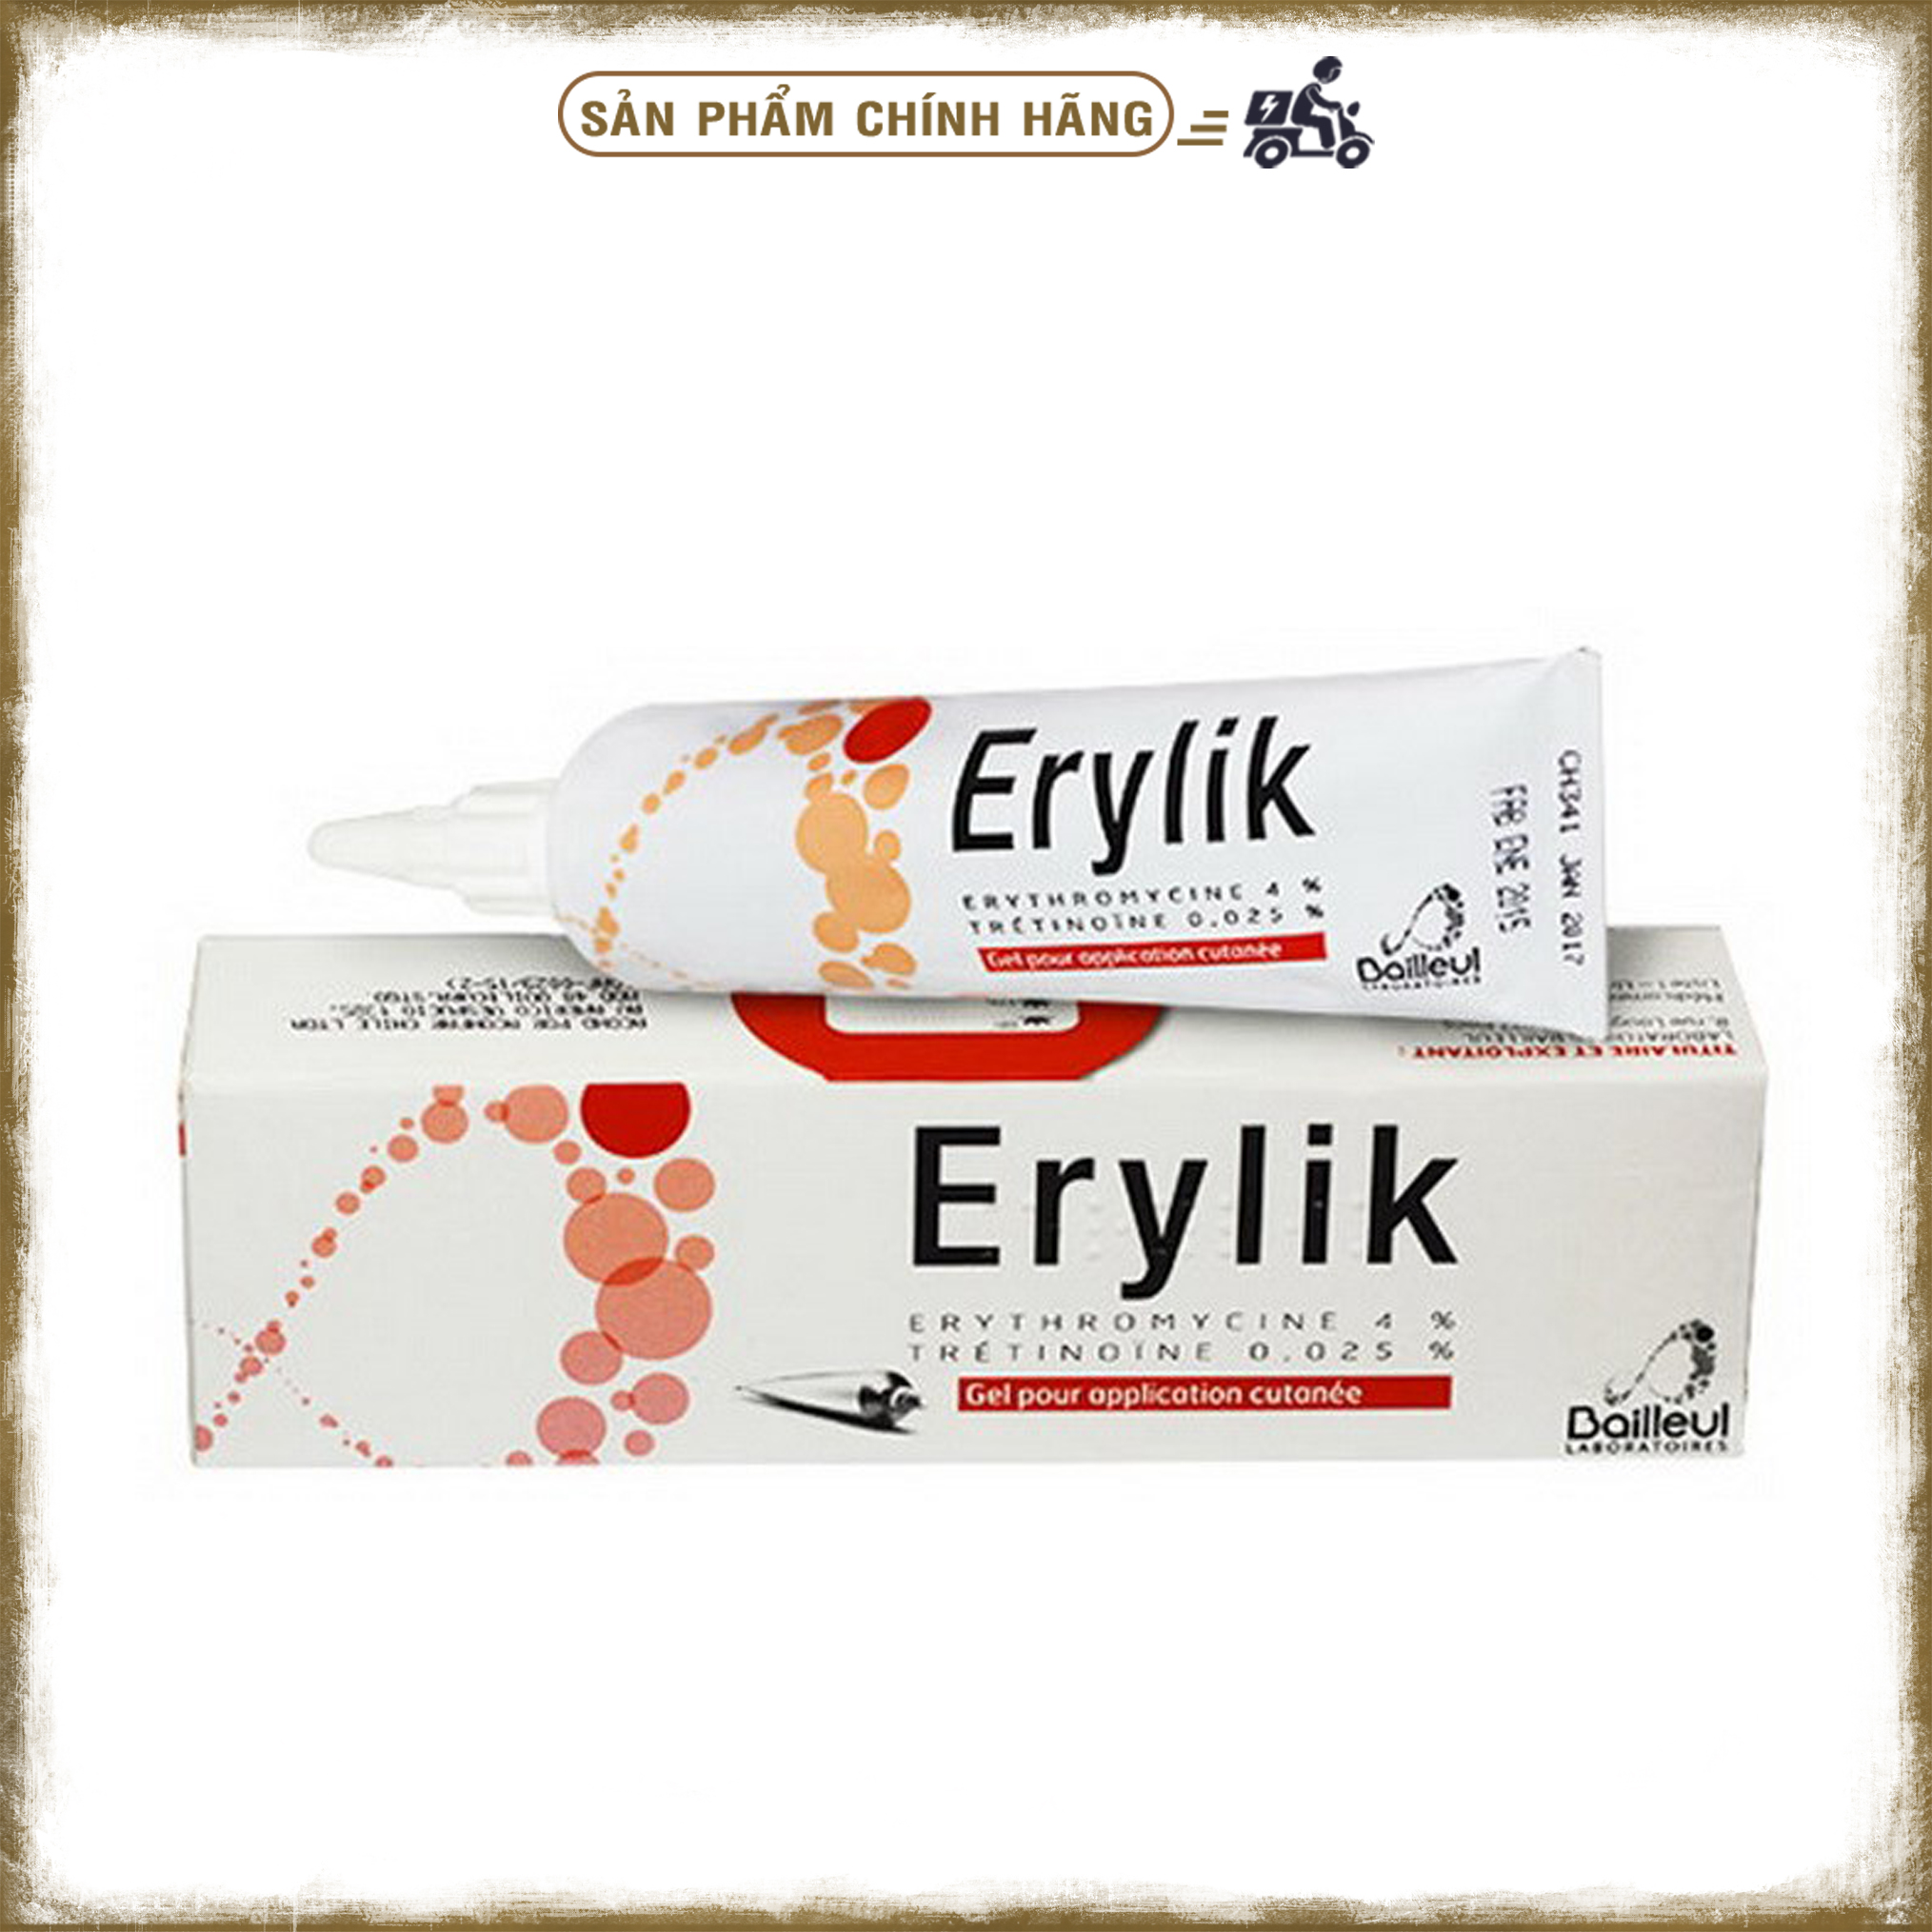 Erylik - kem trị mụn trứng cá